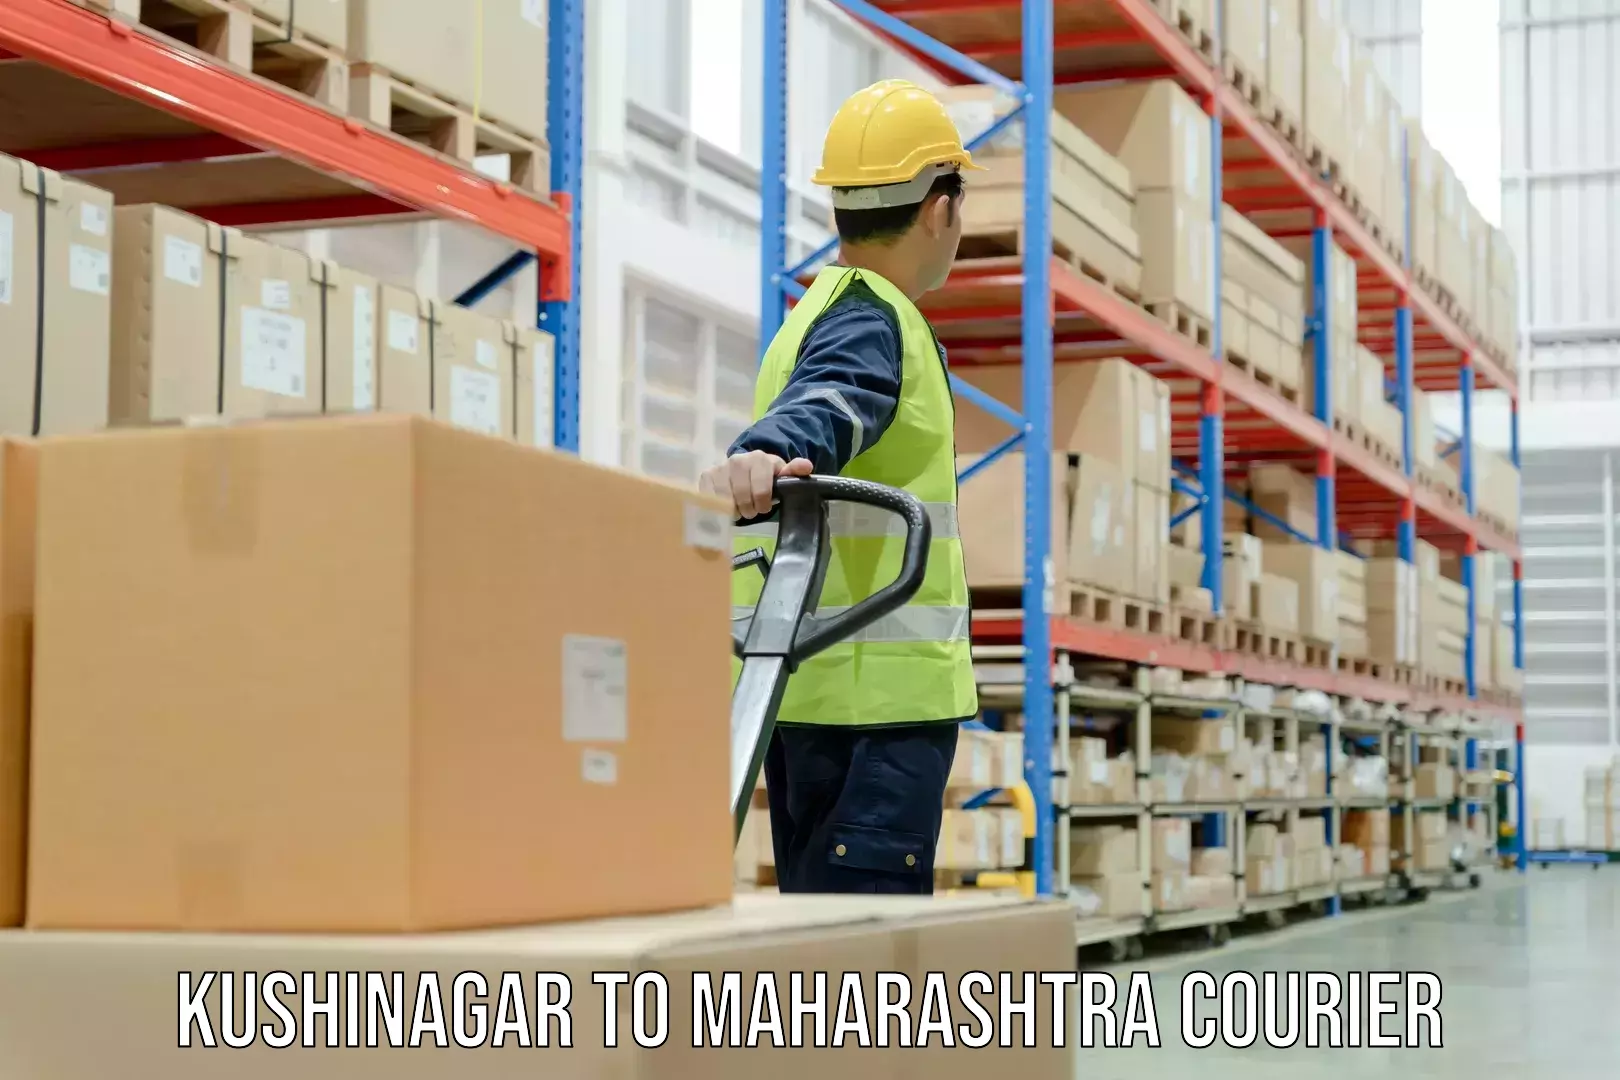 Global shipping solutions in Kushinagar to Ahmednagar